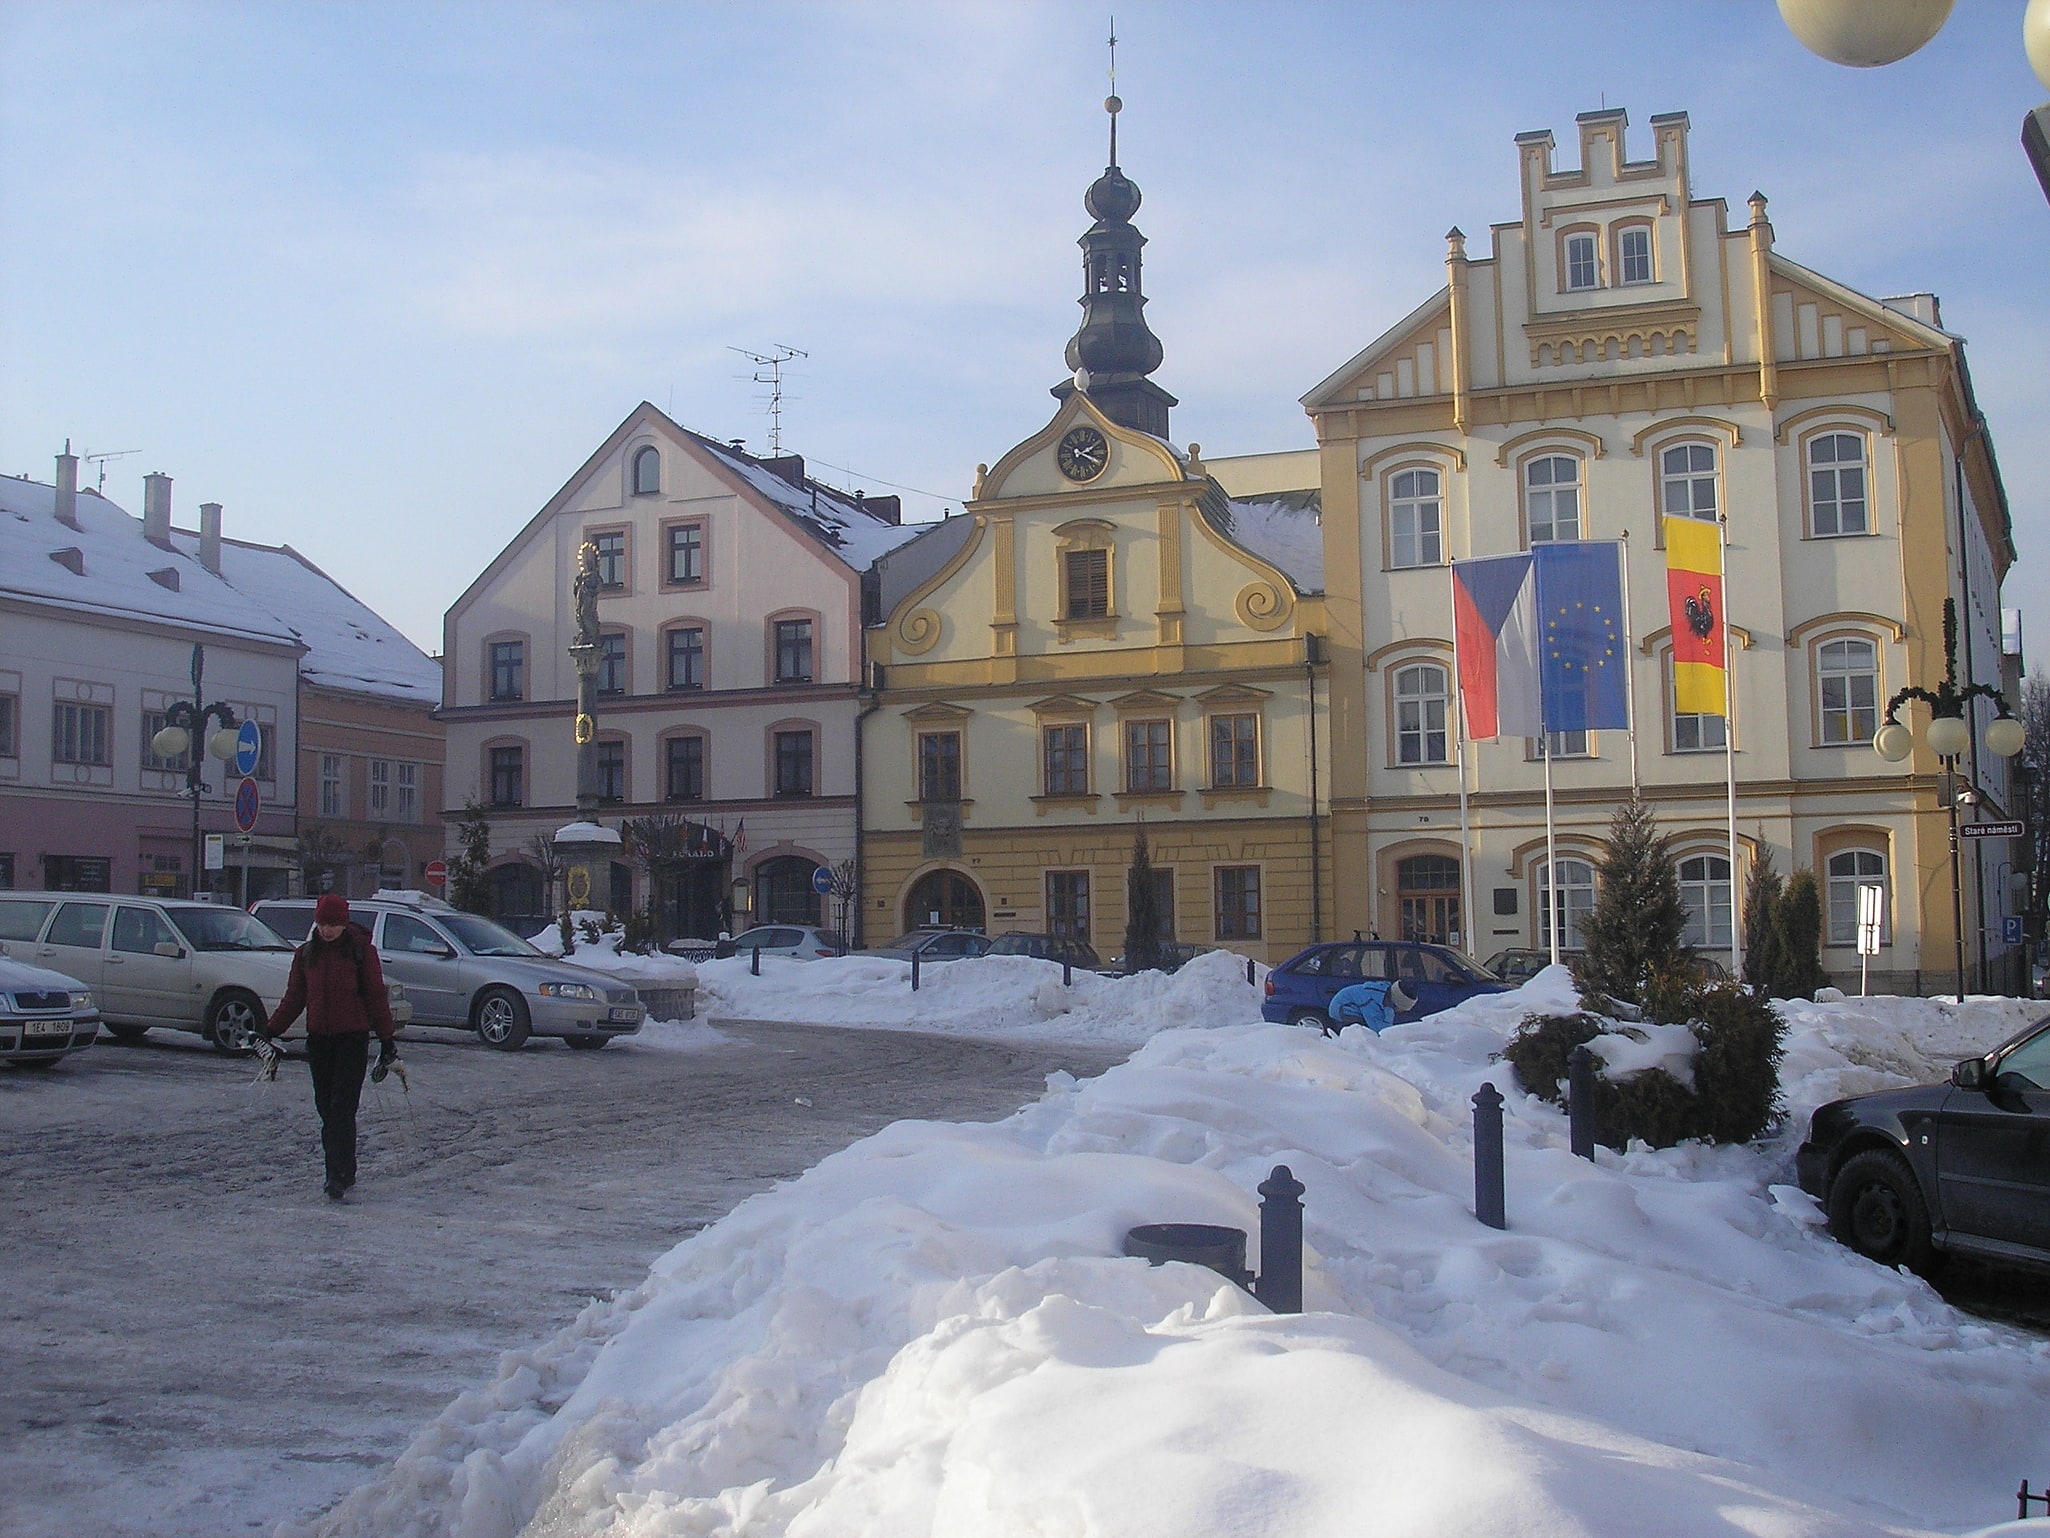 Česká Třebová, Czechy